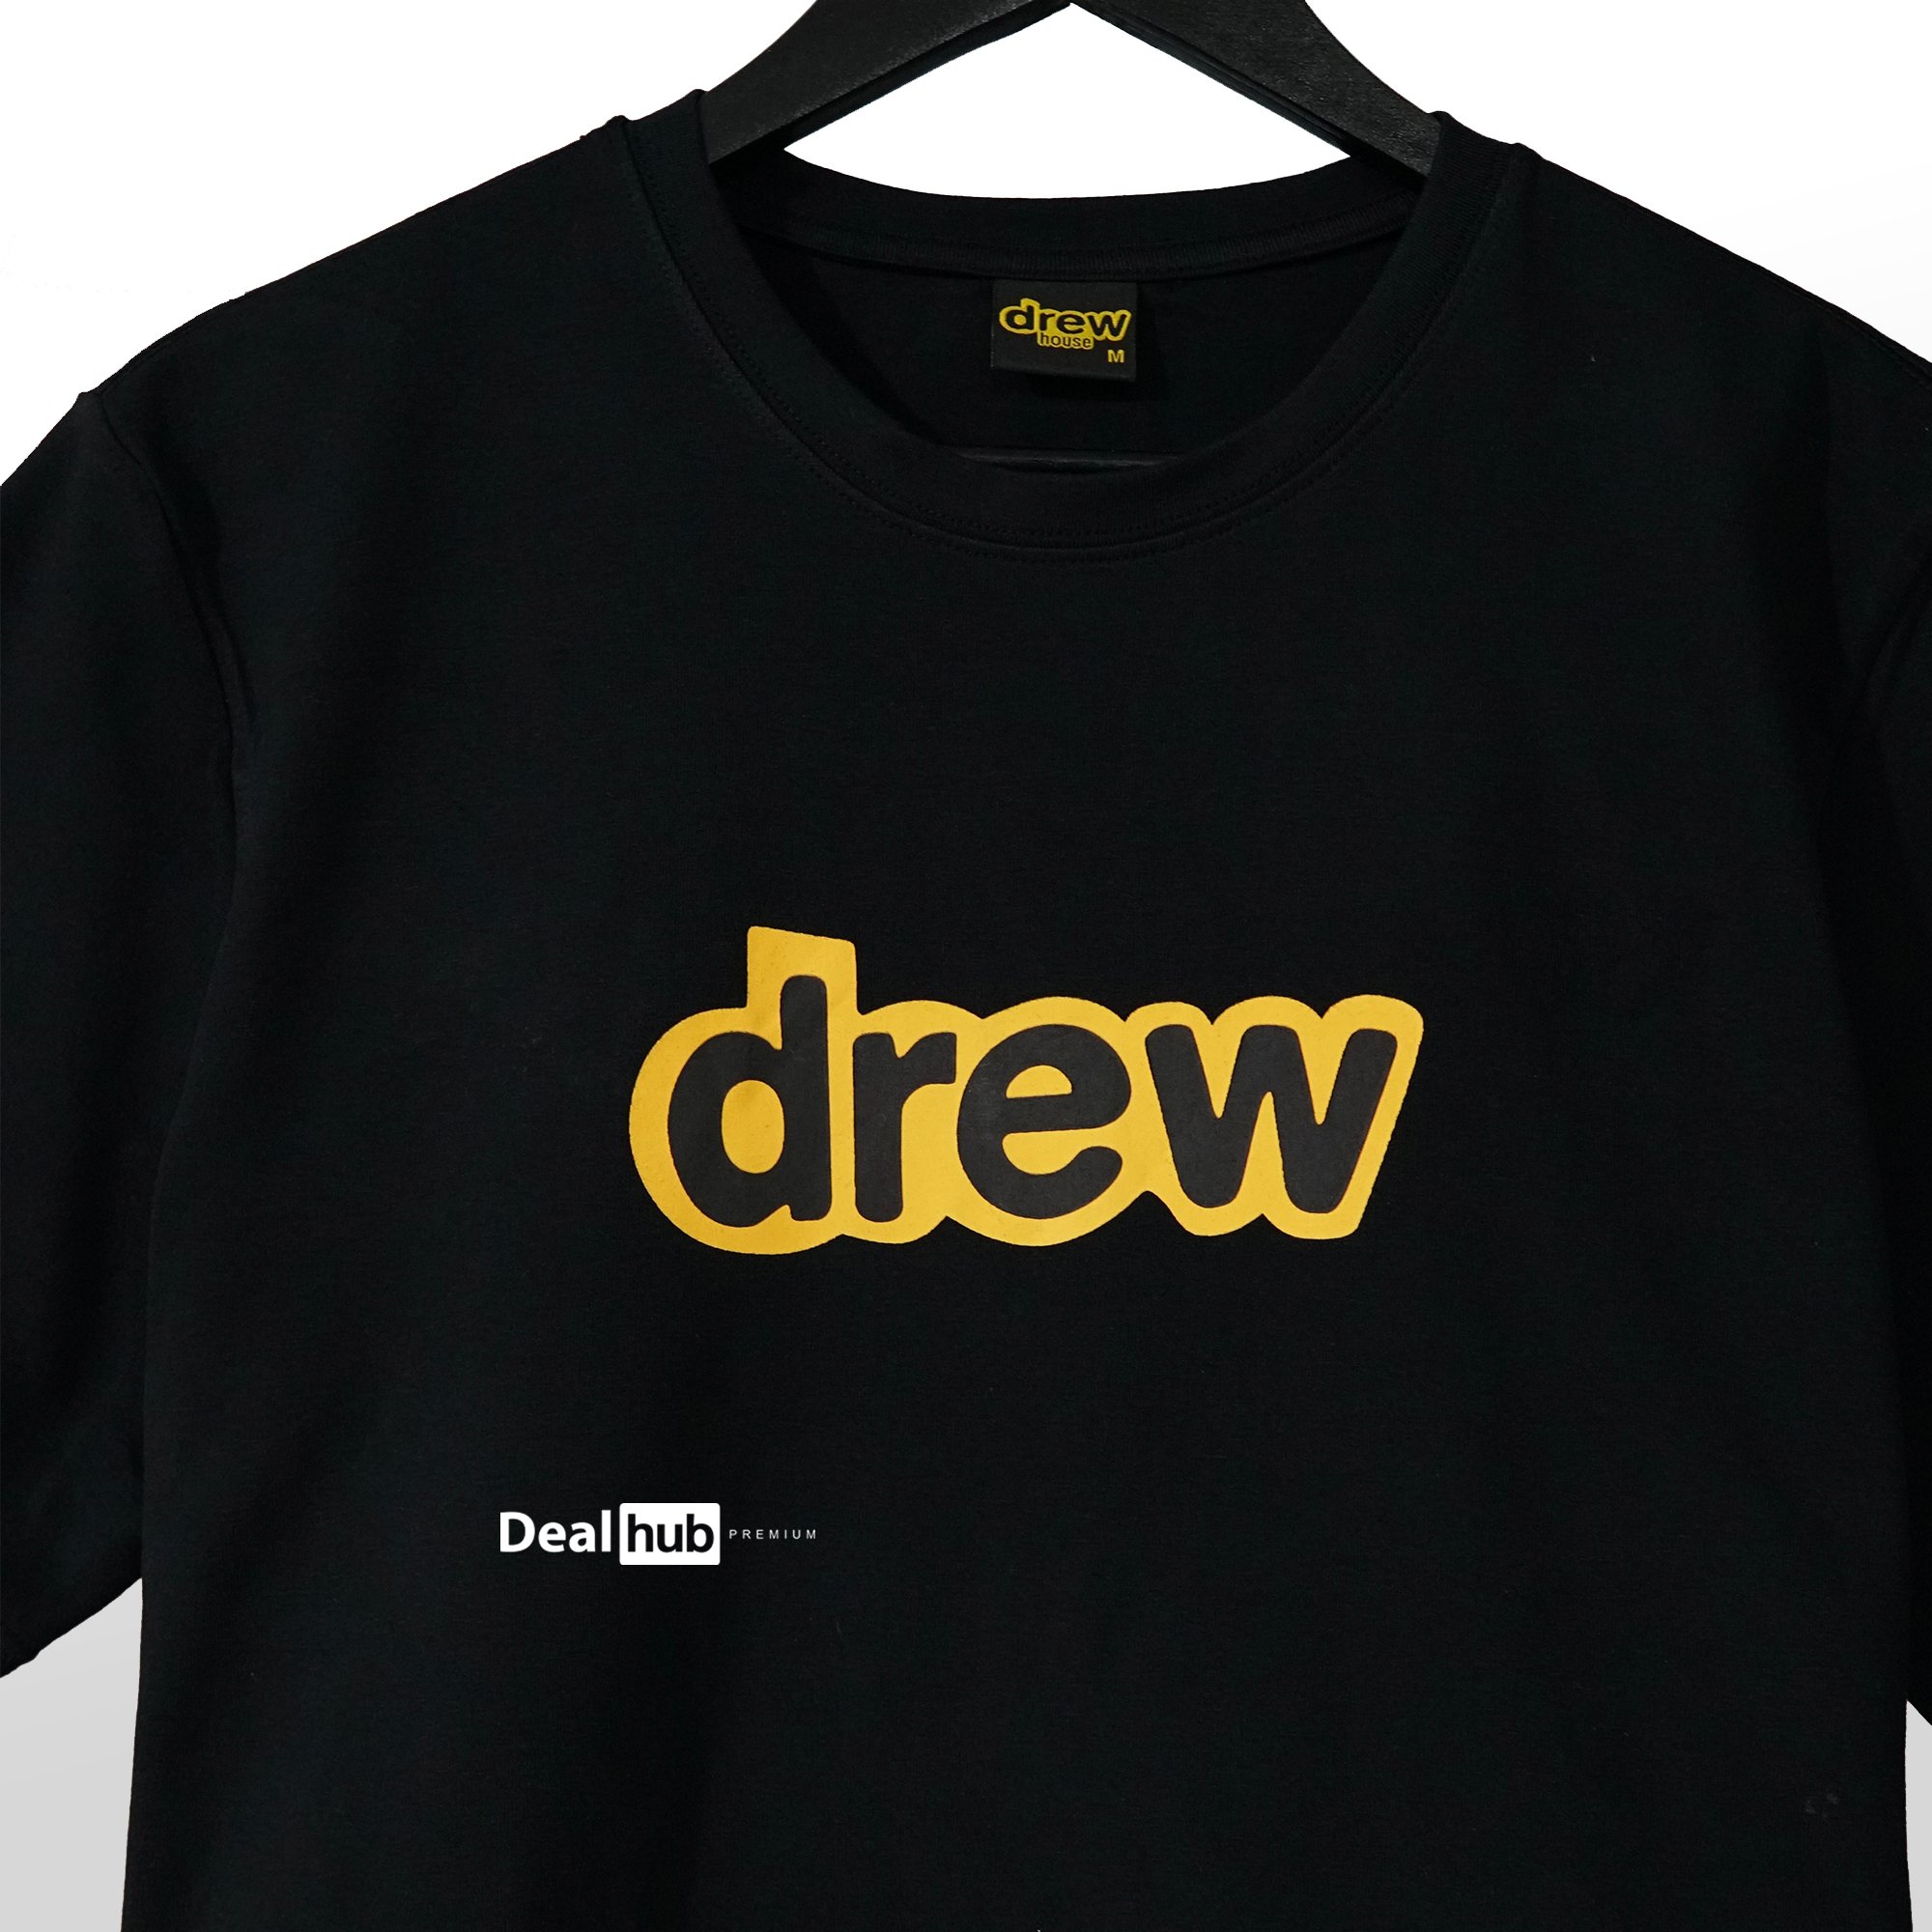 Drew Mascot T-Shirt Black â Deal Hub